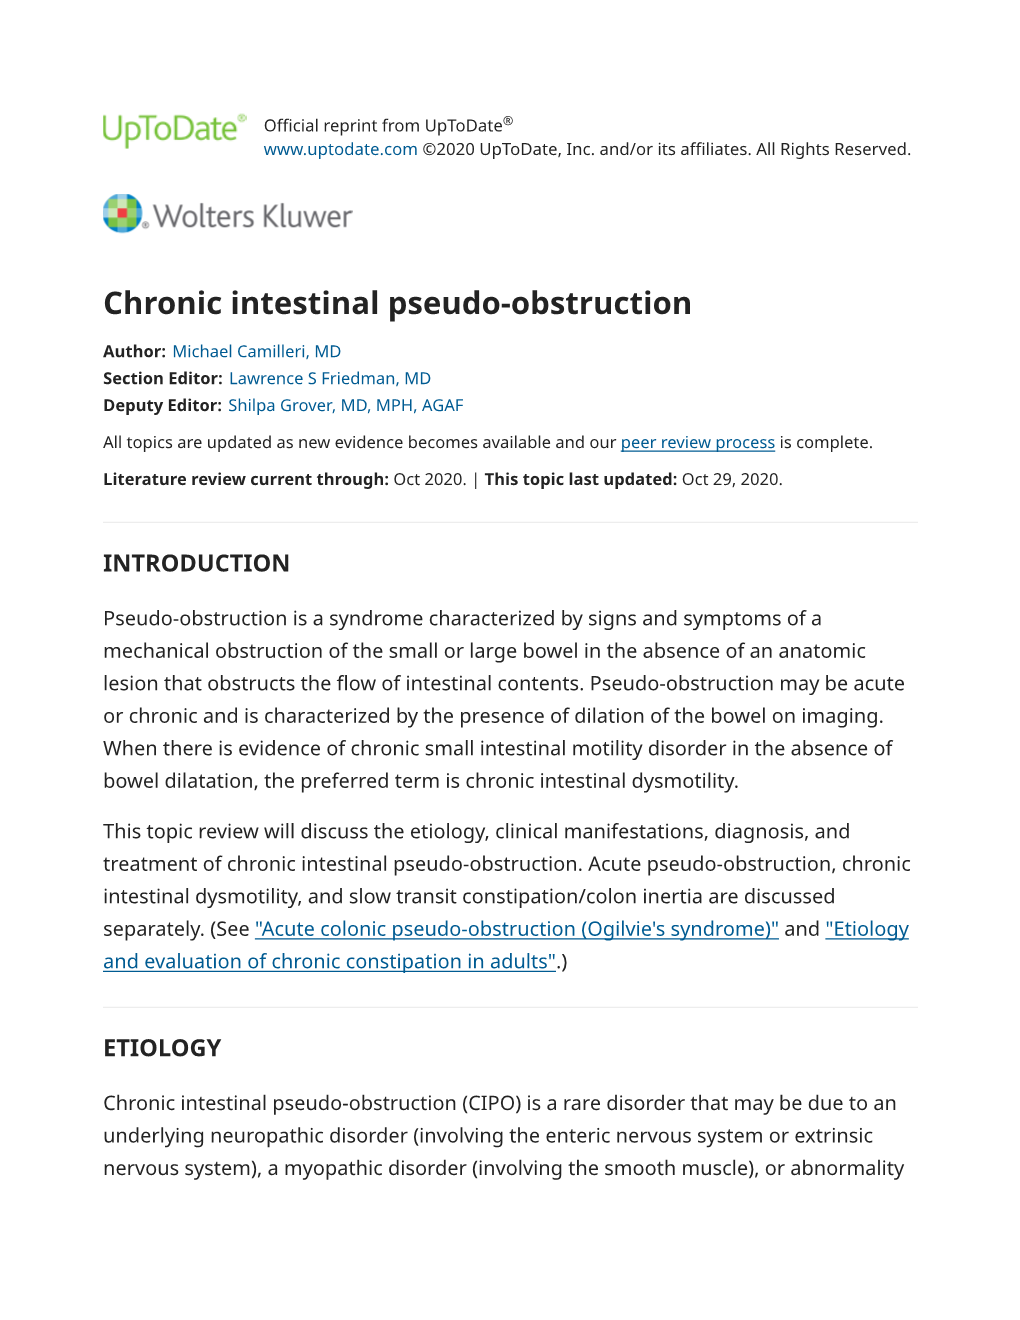 Chronic Intestinal Pseudo-Obstruction